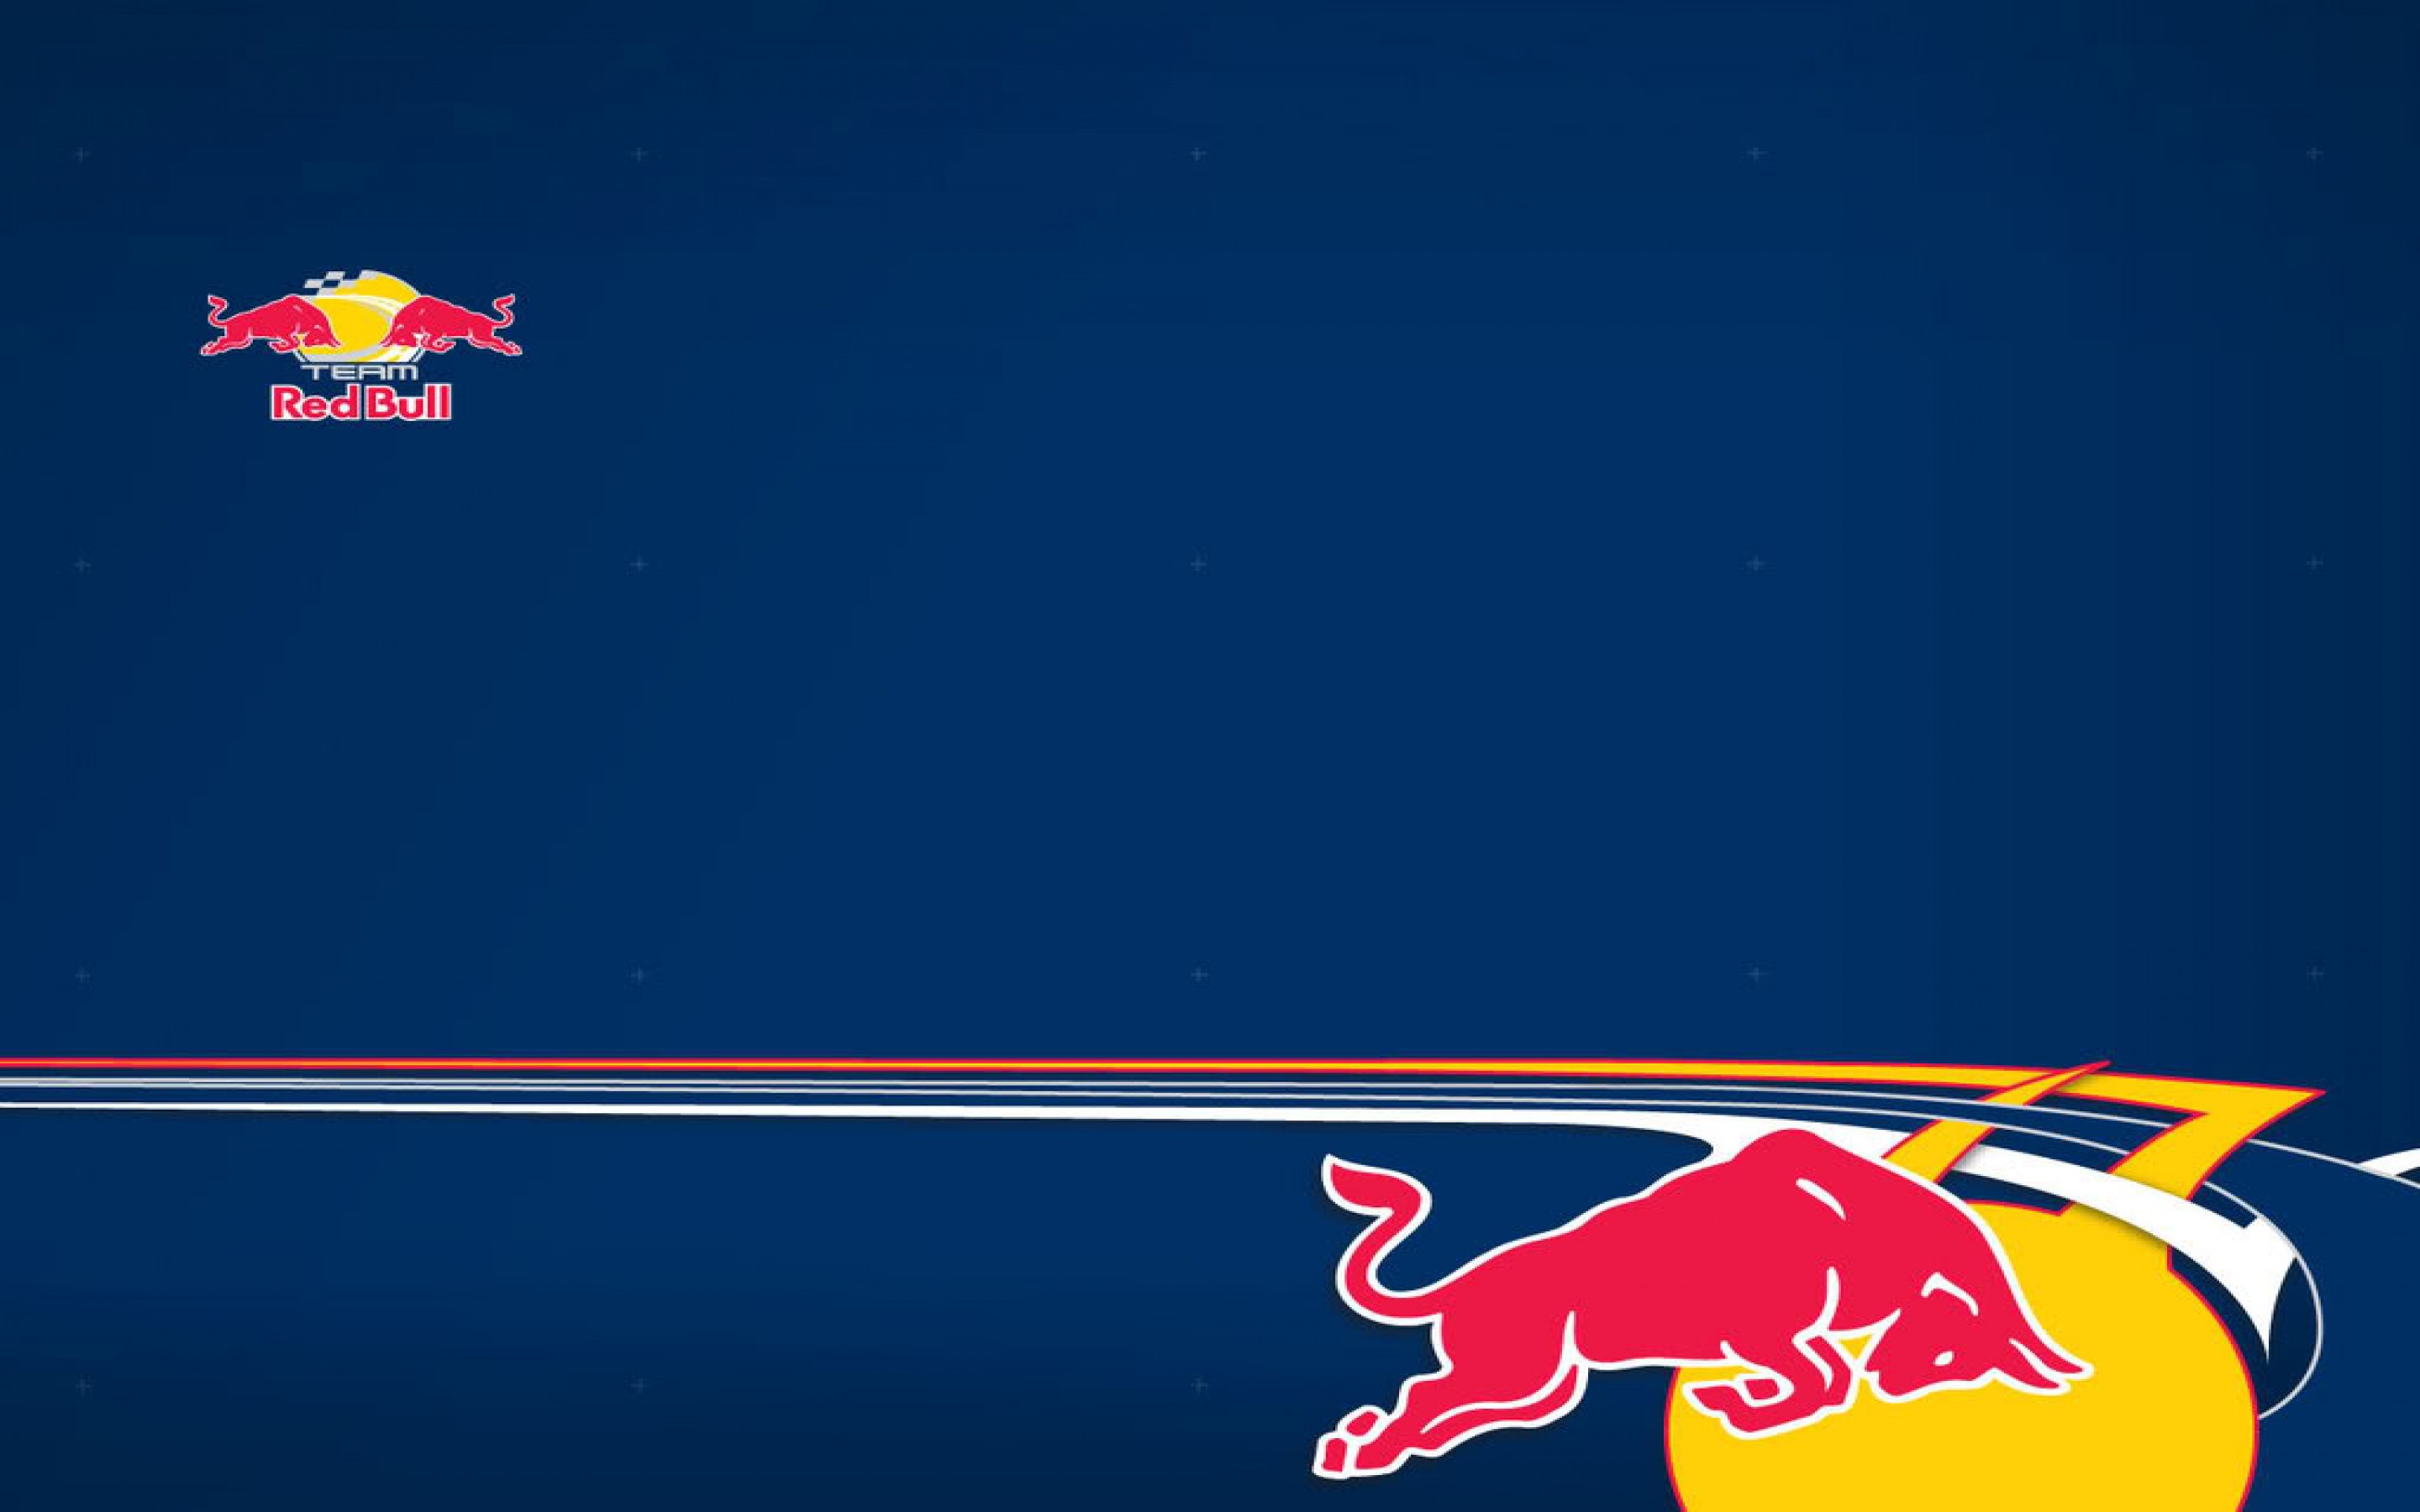 Logo Red Bull là biểu tượng đại diện cho năng lượng và sự đột phá. Đó là điều mà bạn có thể thấy rõ nhất khi xem hình nền liên quan. Liệu bạn đã biết được ý nghĩa của mỗi đường cong và hình ảnh trên logo đó chưa?